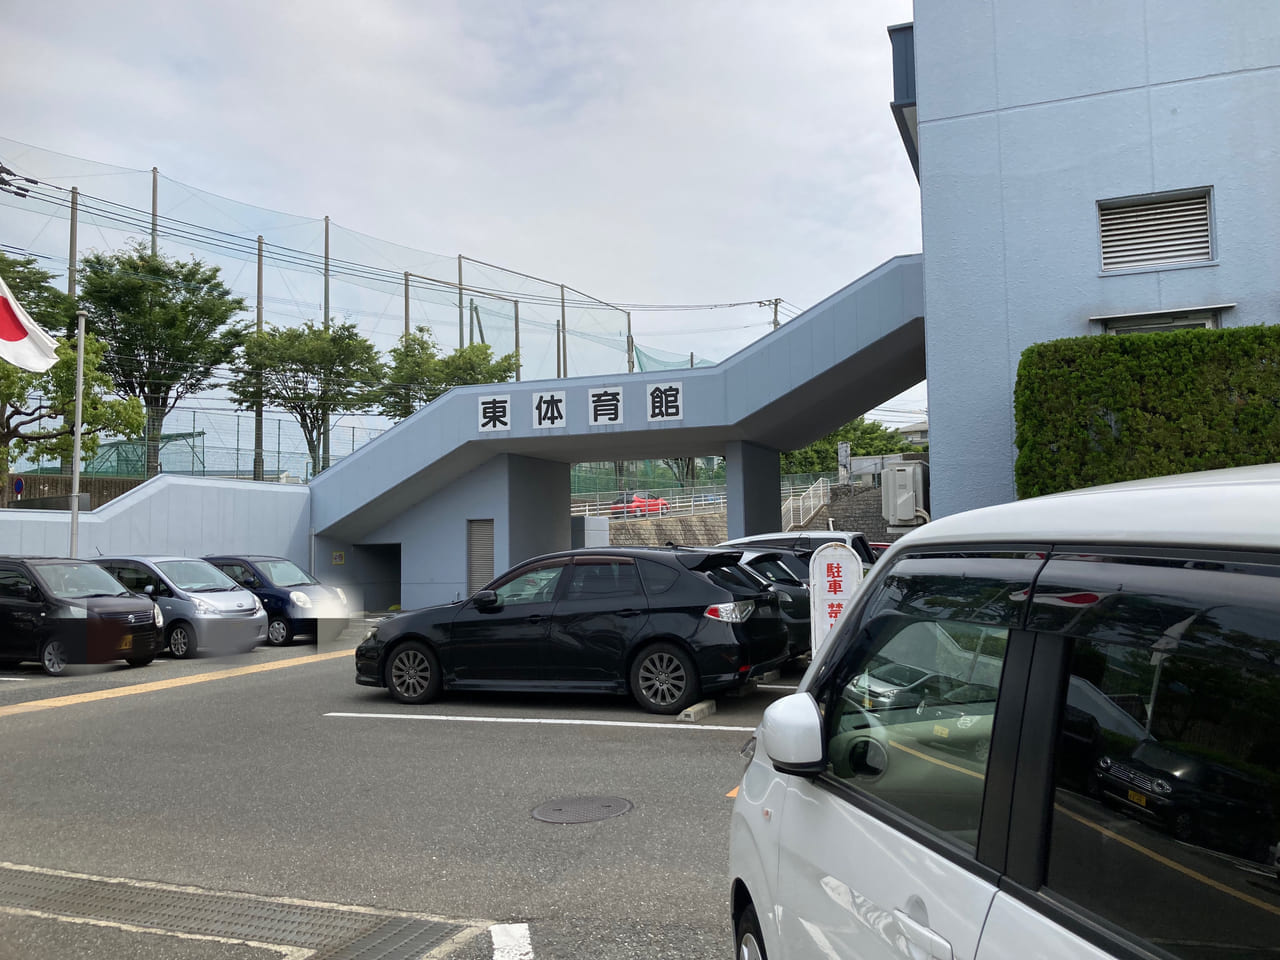 福岡市東体育館は、西鉄貝塚線「香椎花園前」駅から徒歩で約8分の距離にあります。